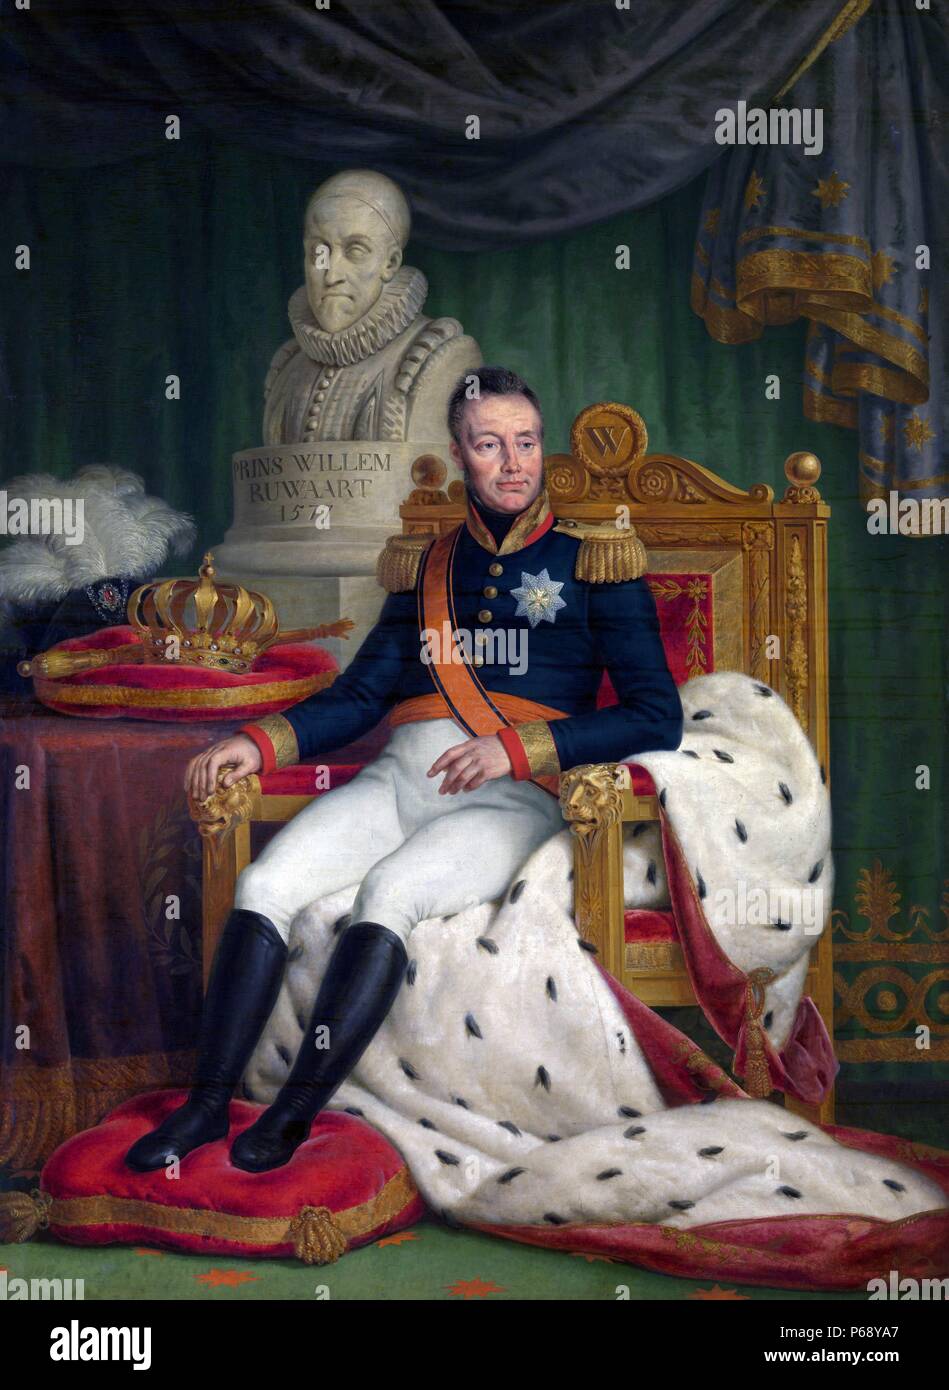 Porträt von William ich (1772-1843) König der Niederlande und Prinz von Oranien. Datiert 1827 Stockfoto